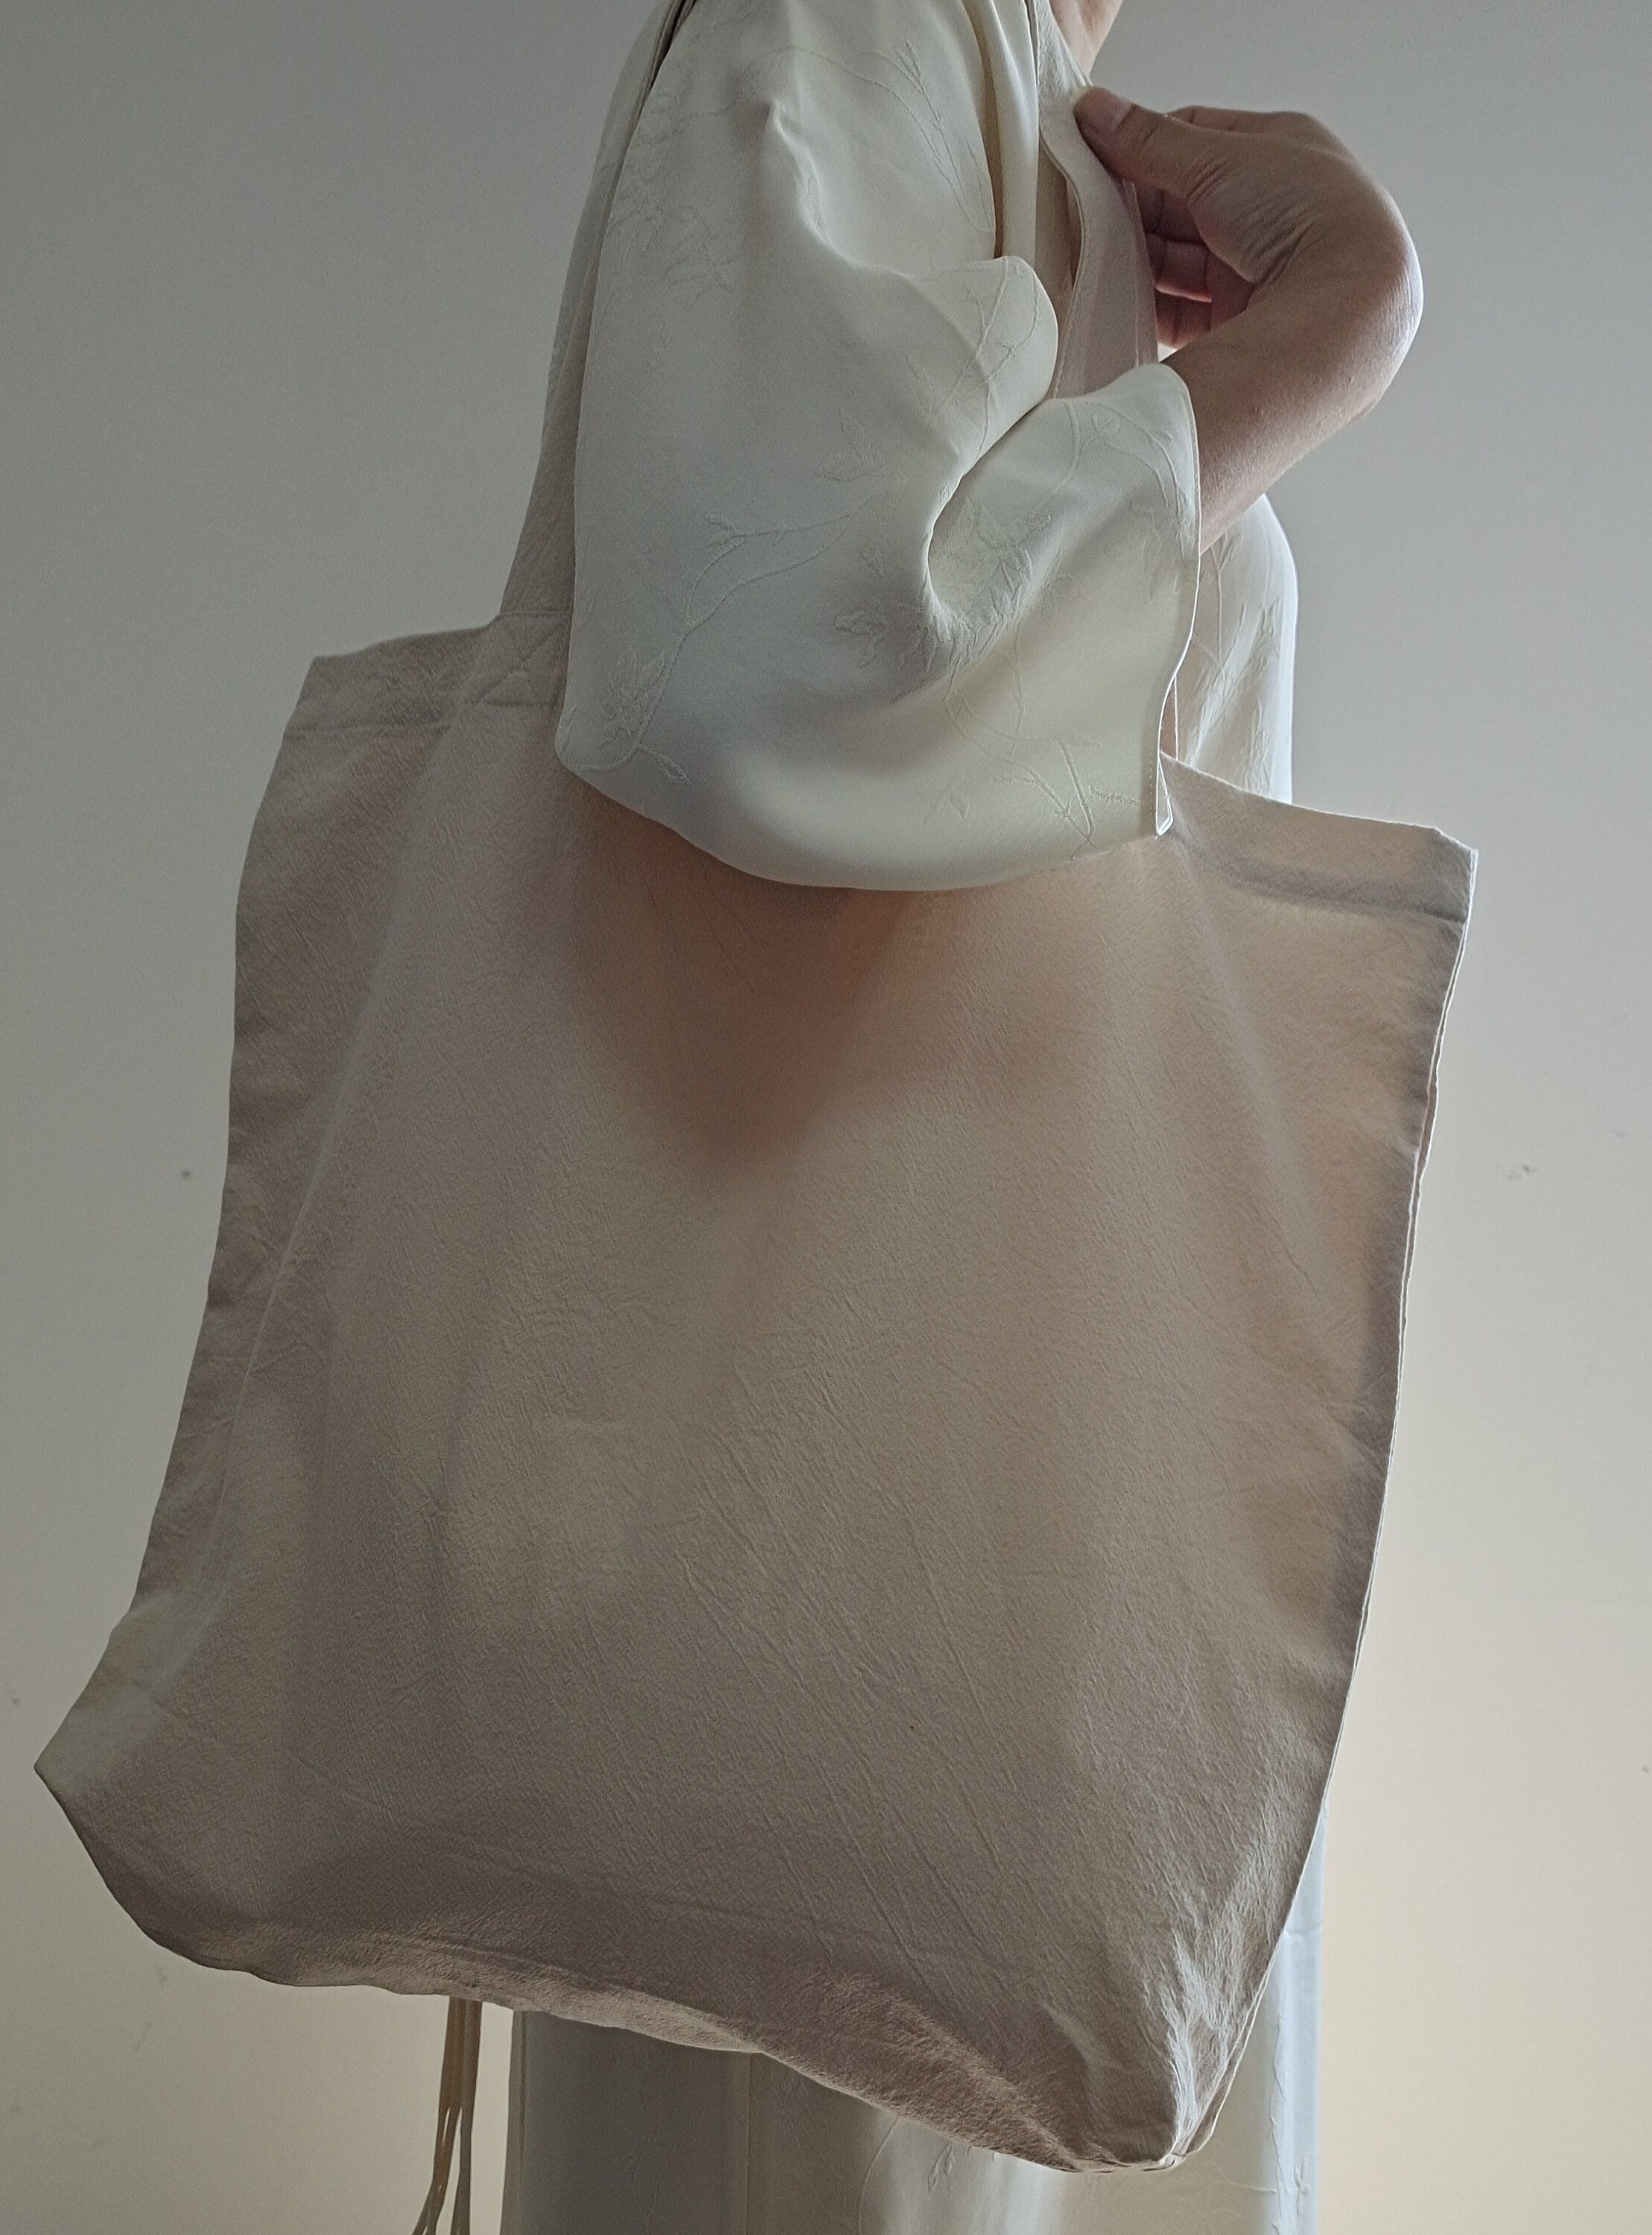 Off-white  tote bag, cotton linen tote bag, market bag, linen bag, shopping shoulder bag， travel bag，beach bag，Literary and elegant